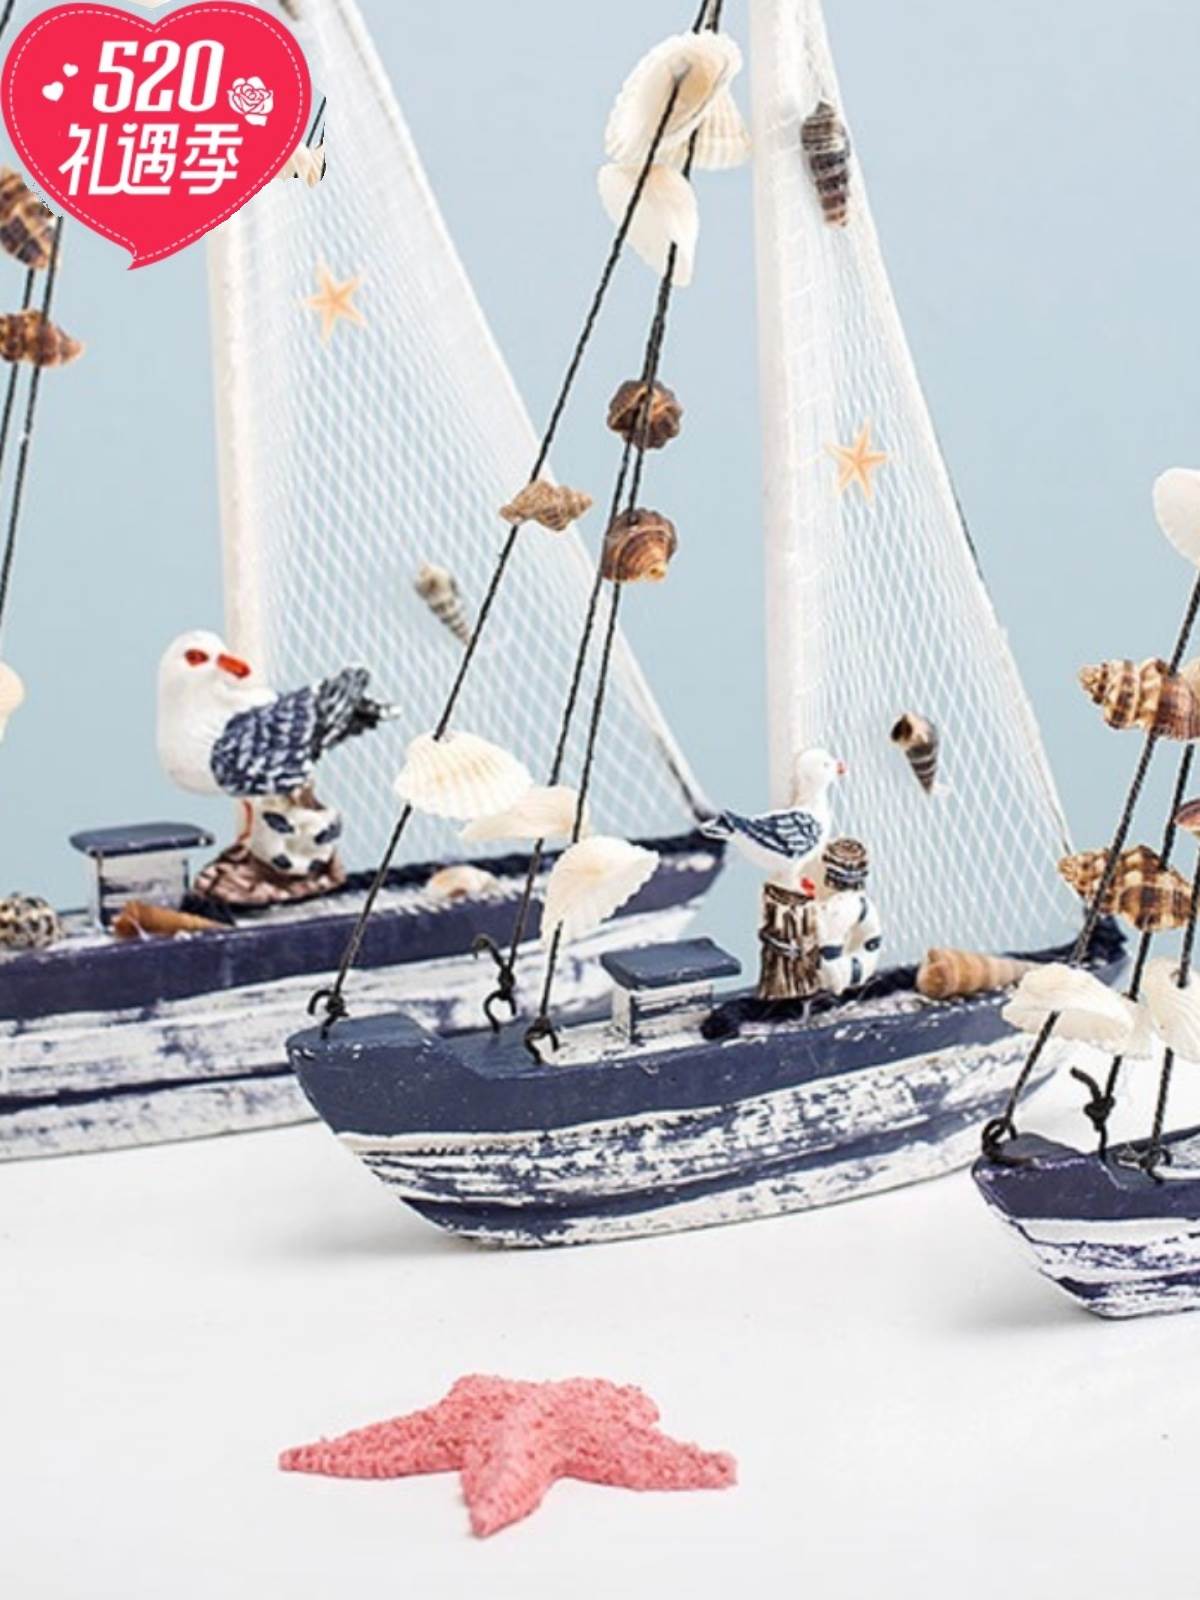 地中海贝壳帆船模型海鸥船模家居装饰摆件青岛特色创意旅游纪念品